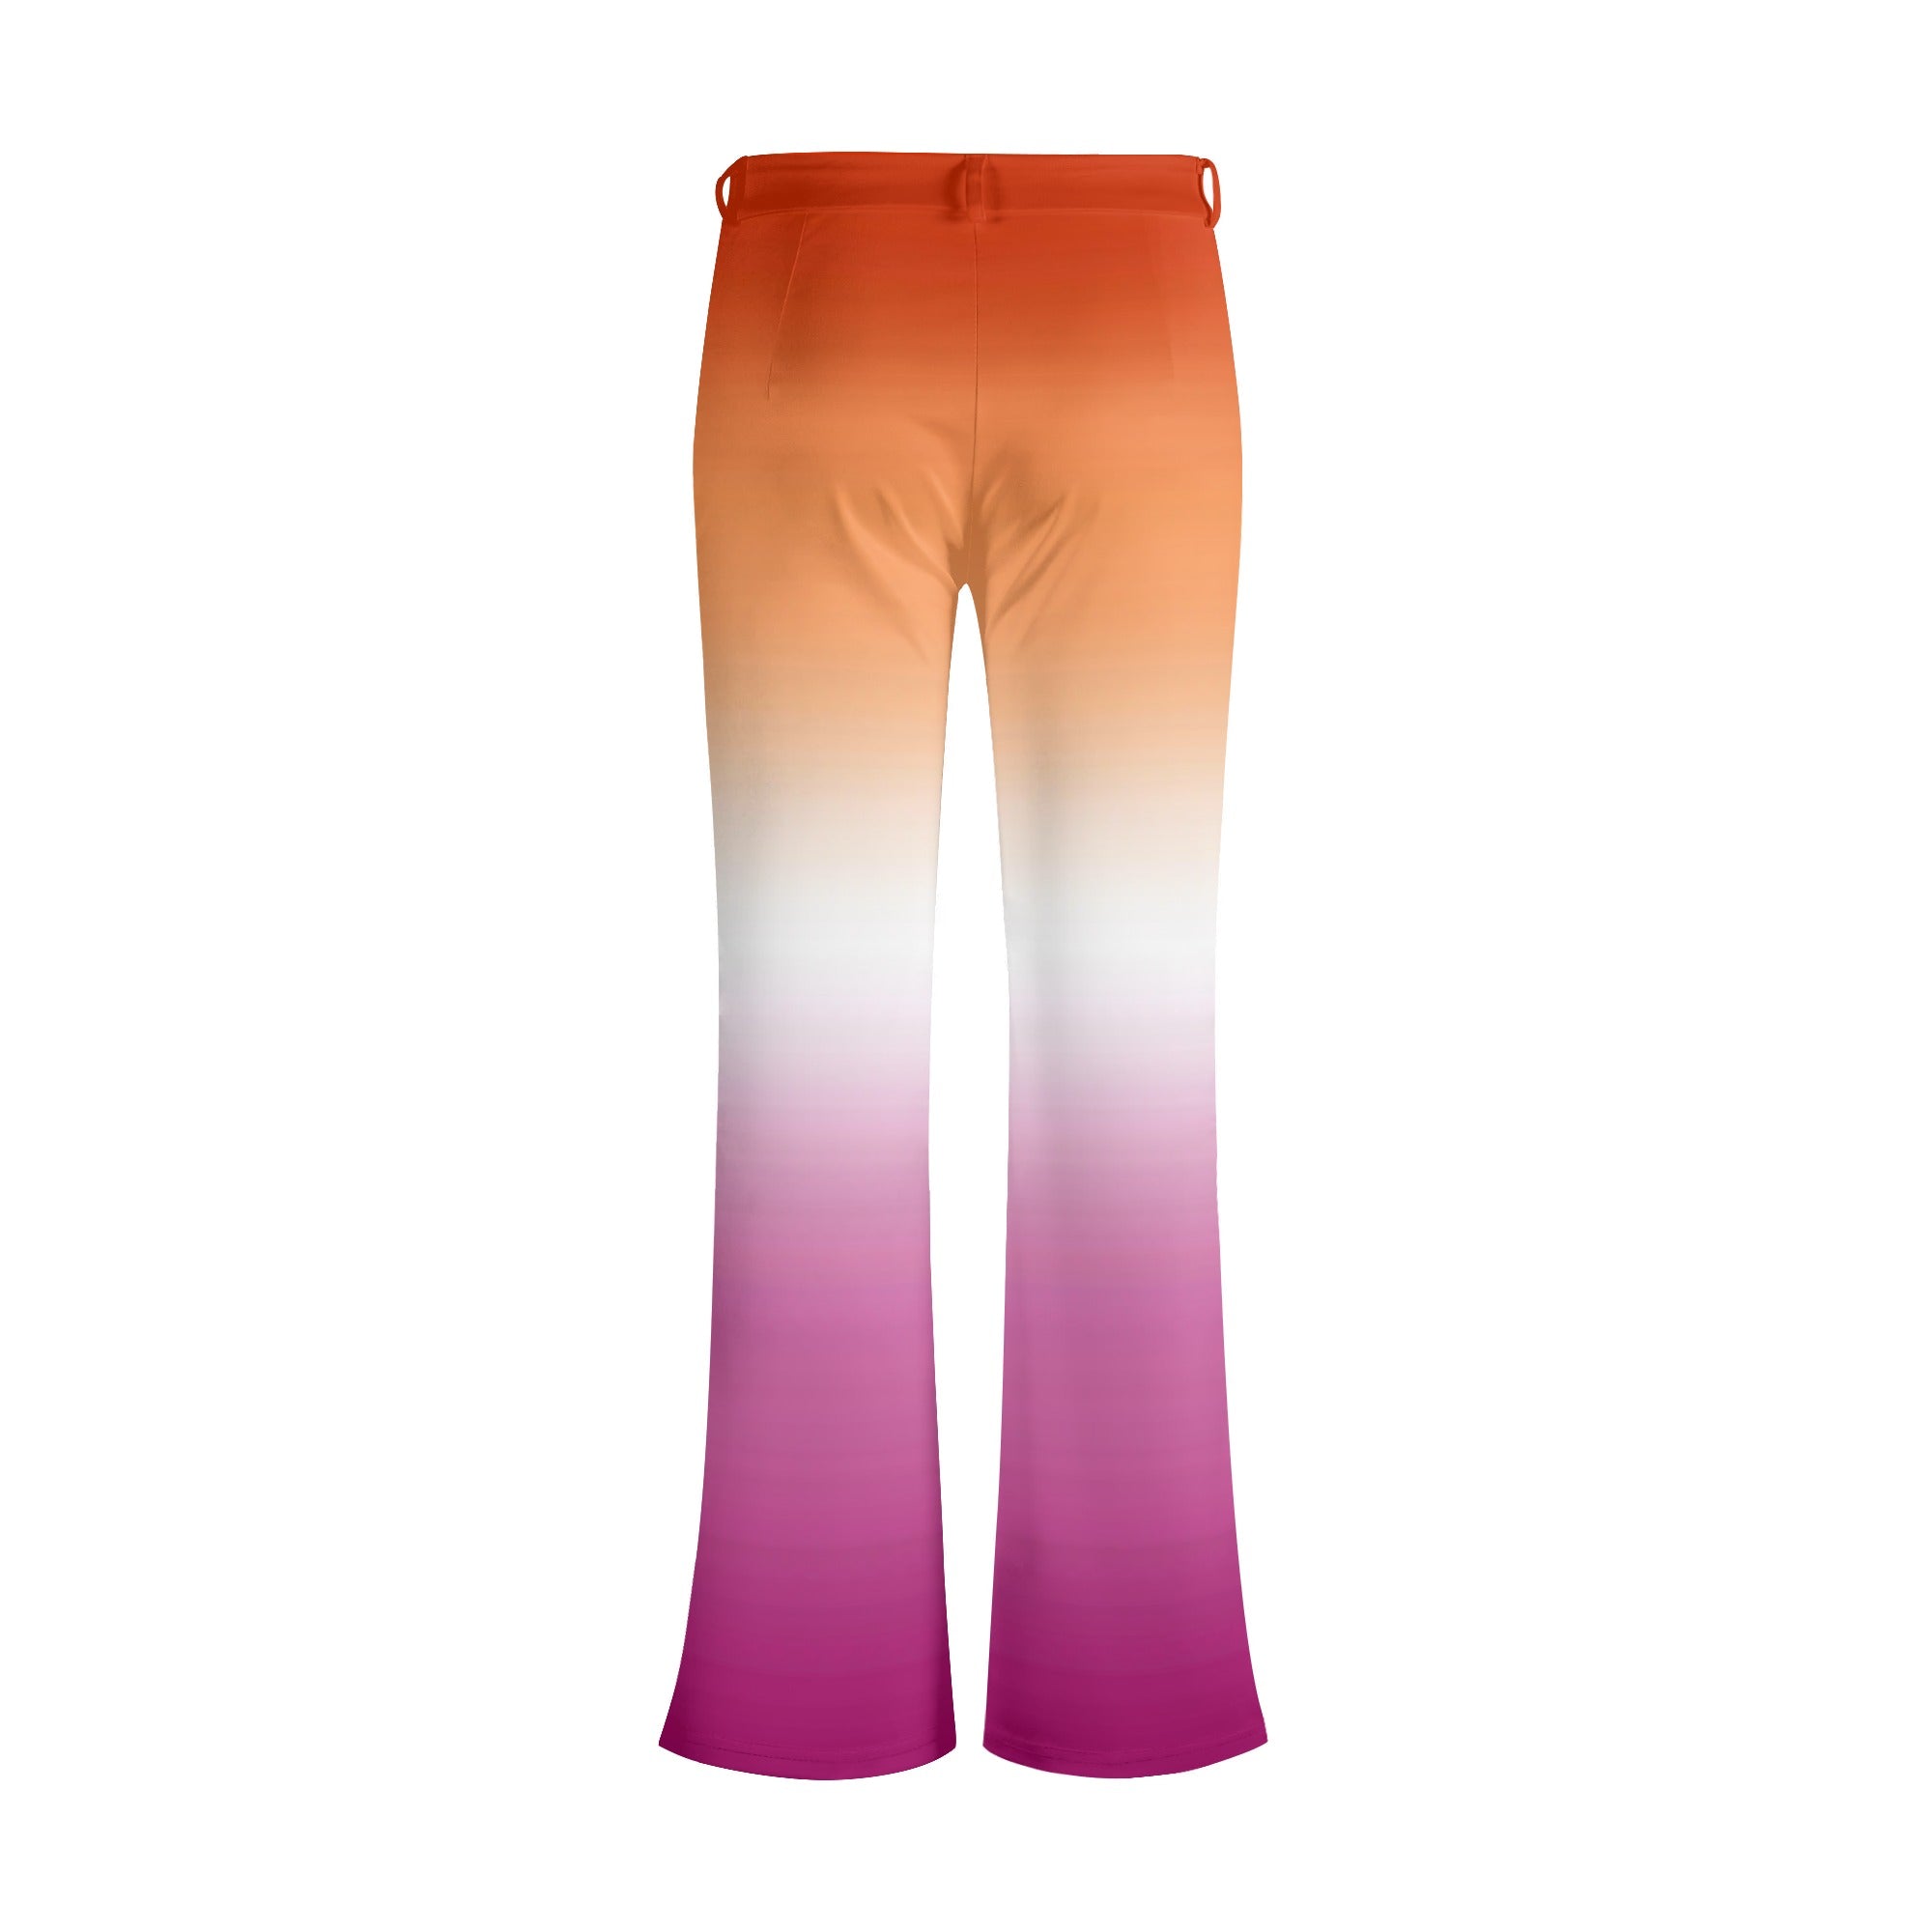 Lesbian Pride Flag Flare Pants - Rose Gold Co. Shop